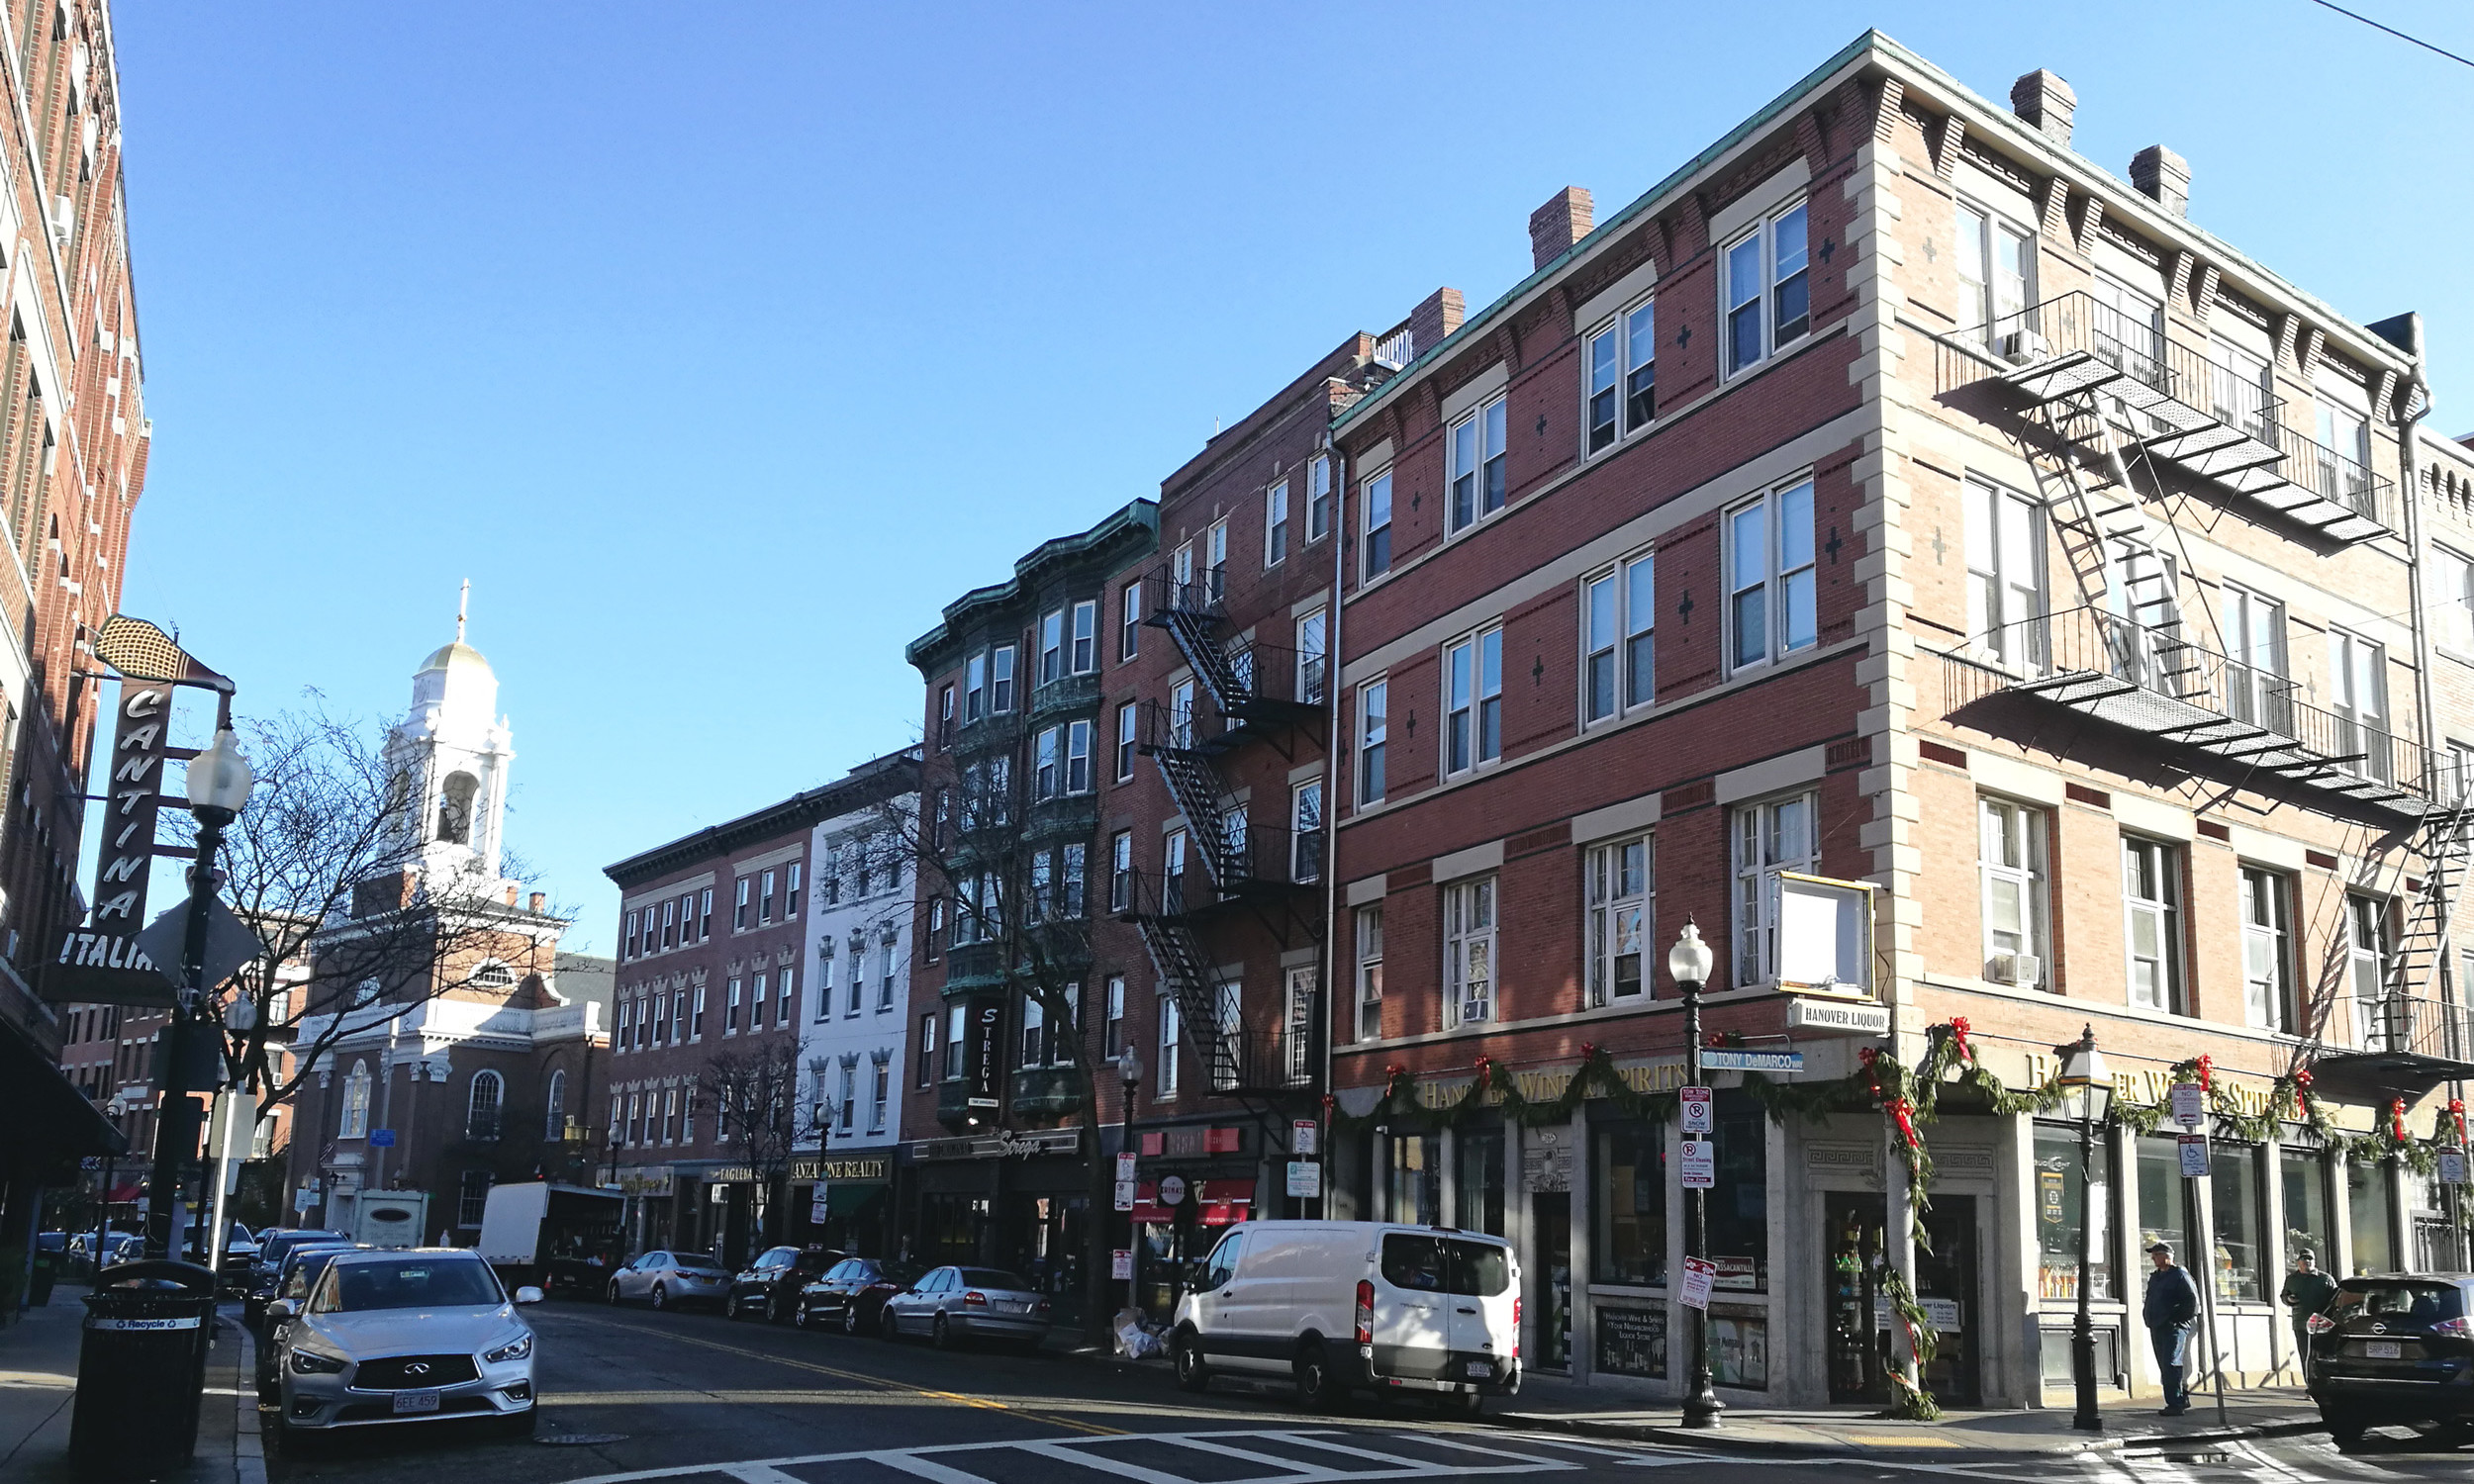 Reisebericht Boston: Hanover Street in Bostons North End